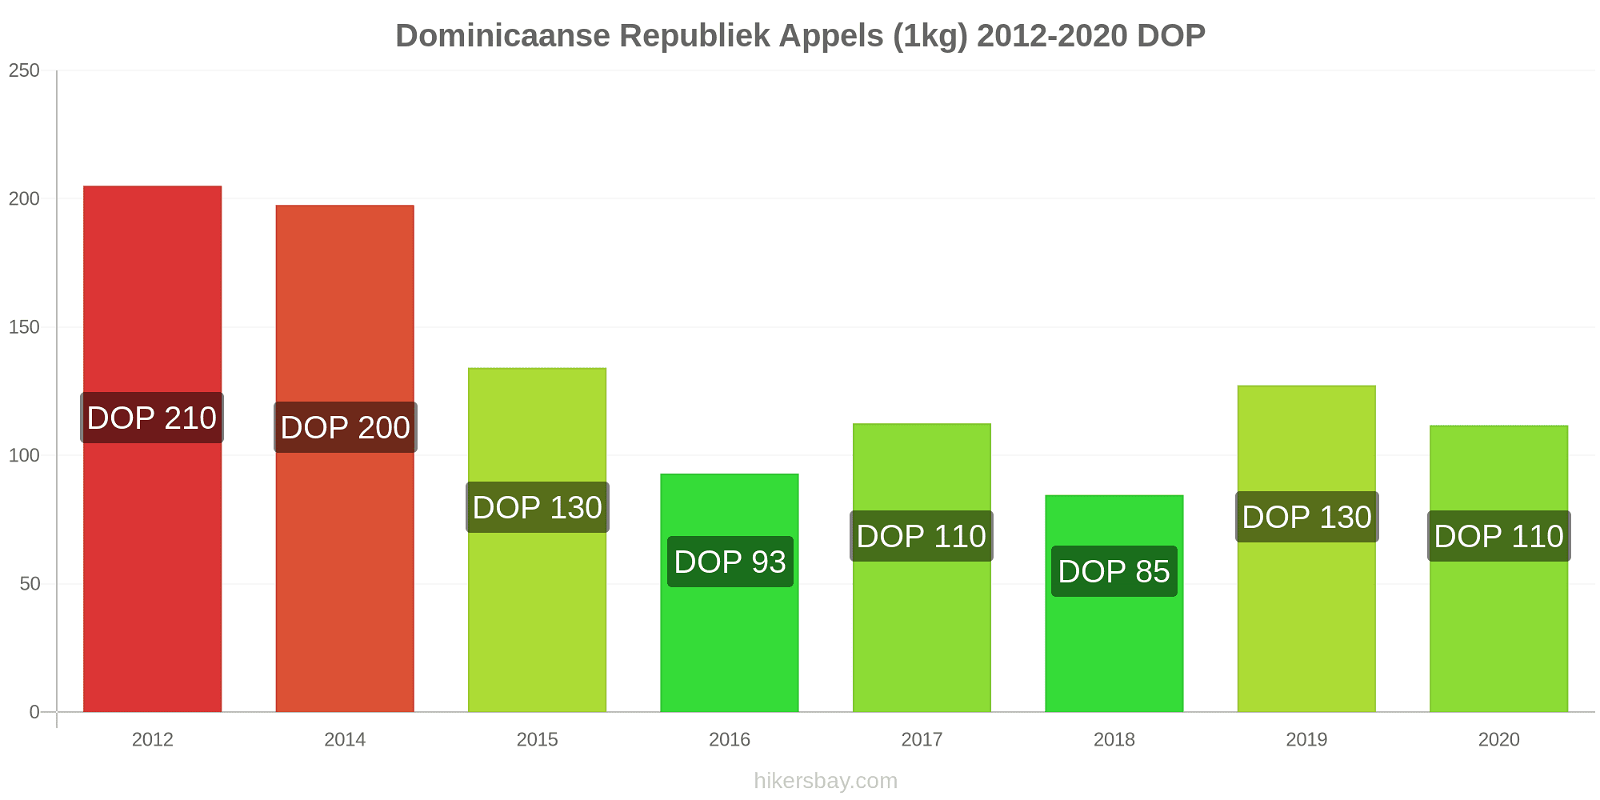 Dominicaanse Republiek prijswijzigingen Appels (1kg) hikersbay.com